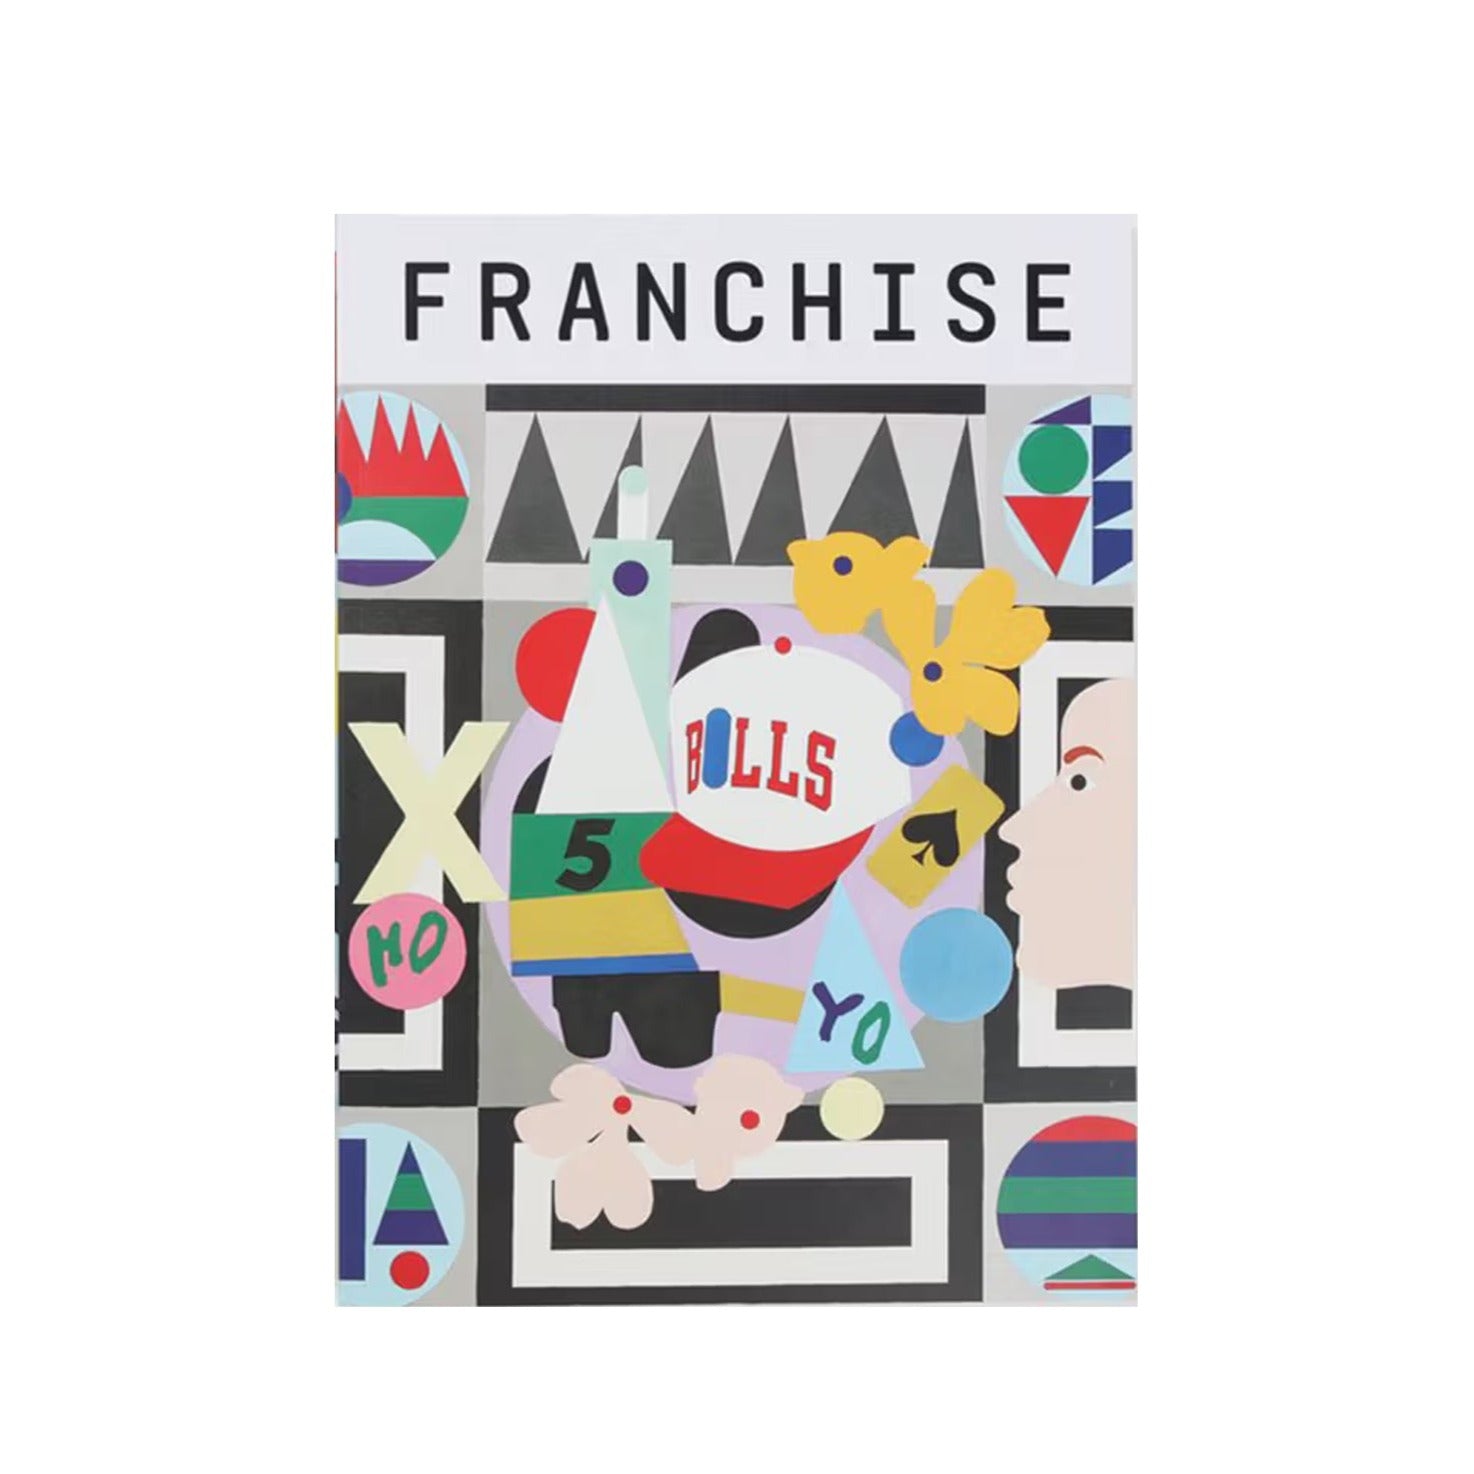 Franchise Magazine - Issue 04